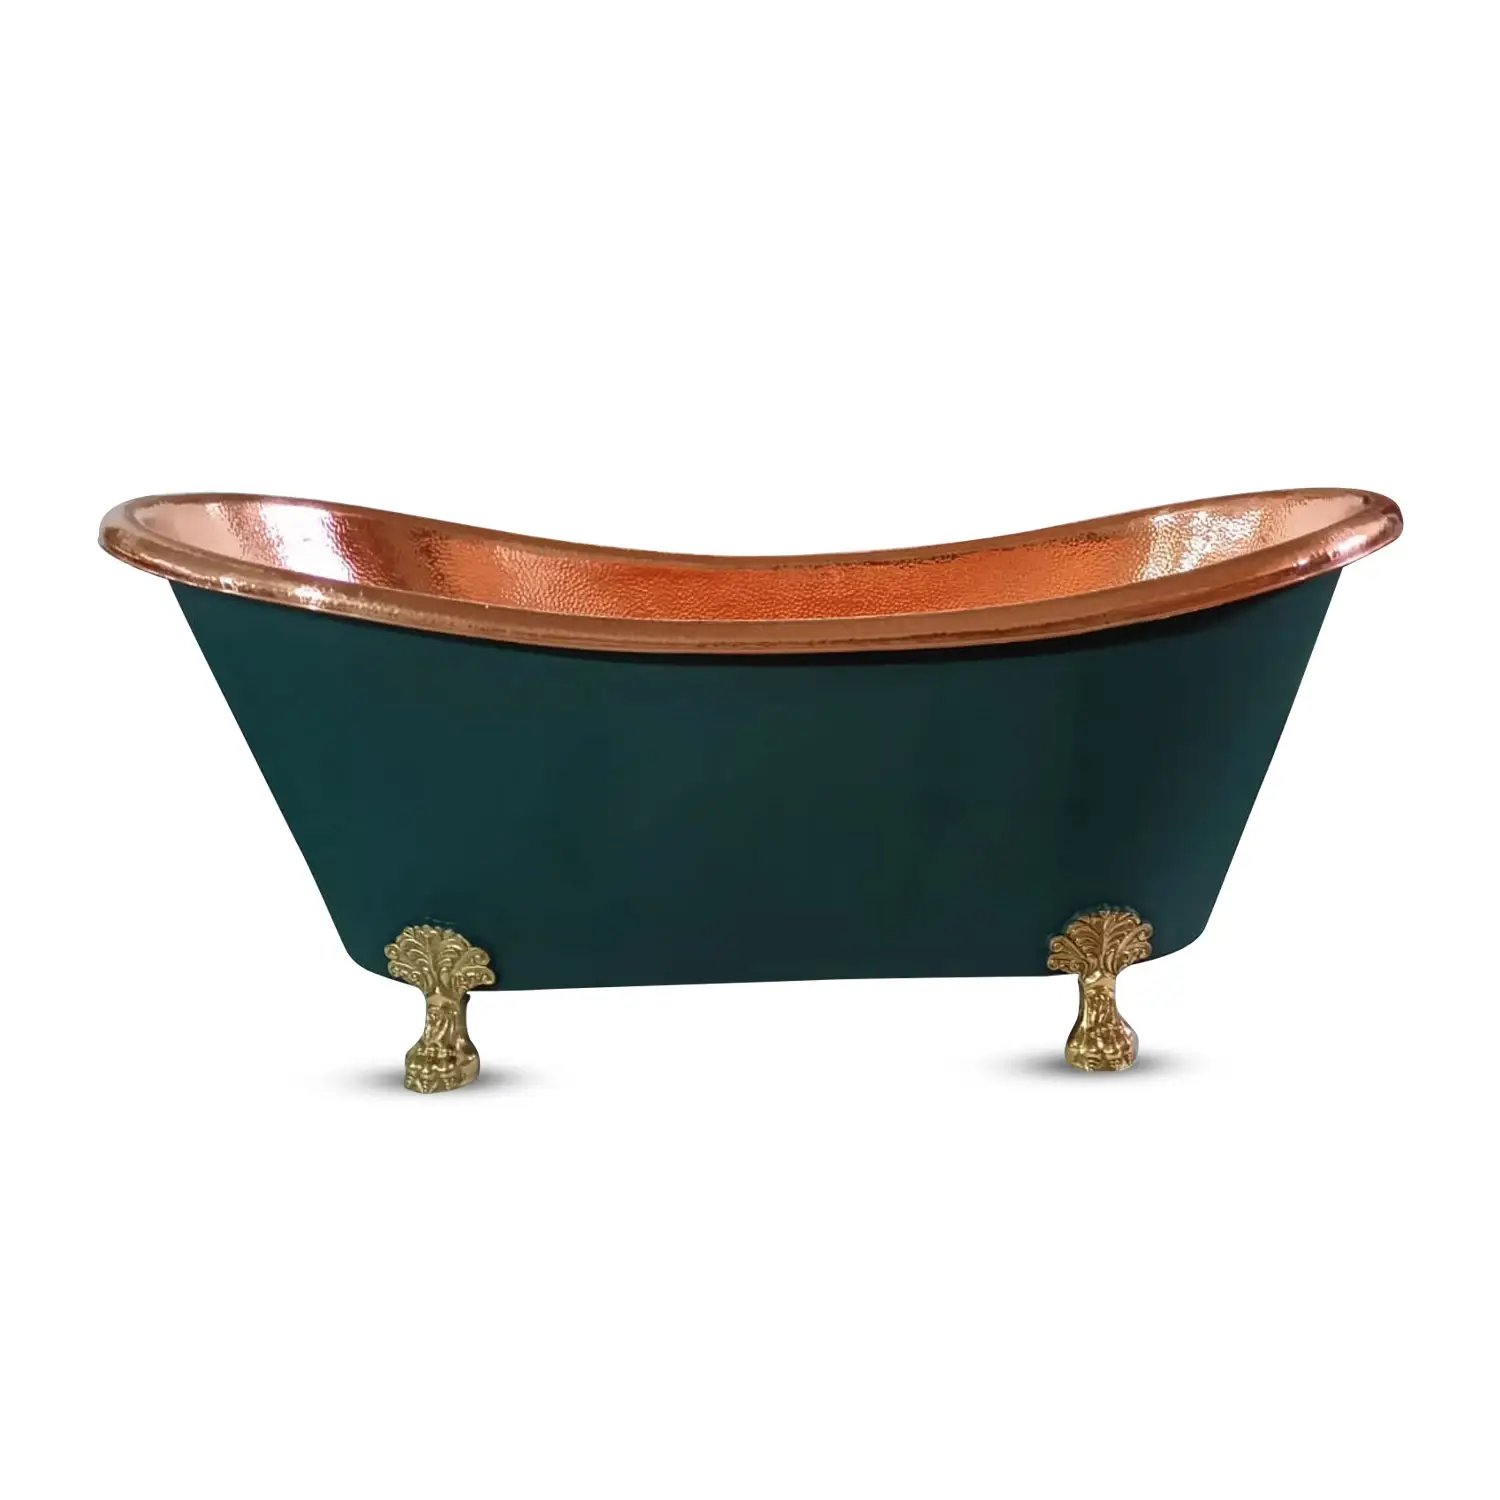 Vasca da bagno in rame martellato verde blu all'ingrosso per la casa dell'hotel del bagno di lusso dimensioni e forma personalizzate per il bagno made in india